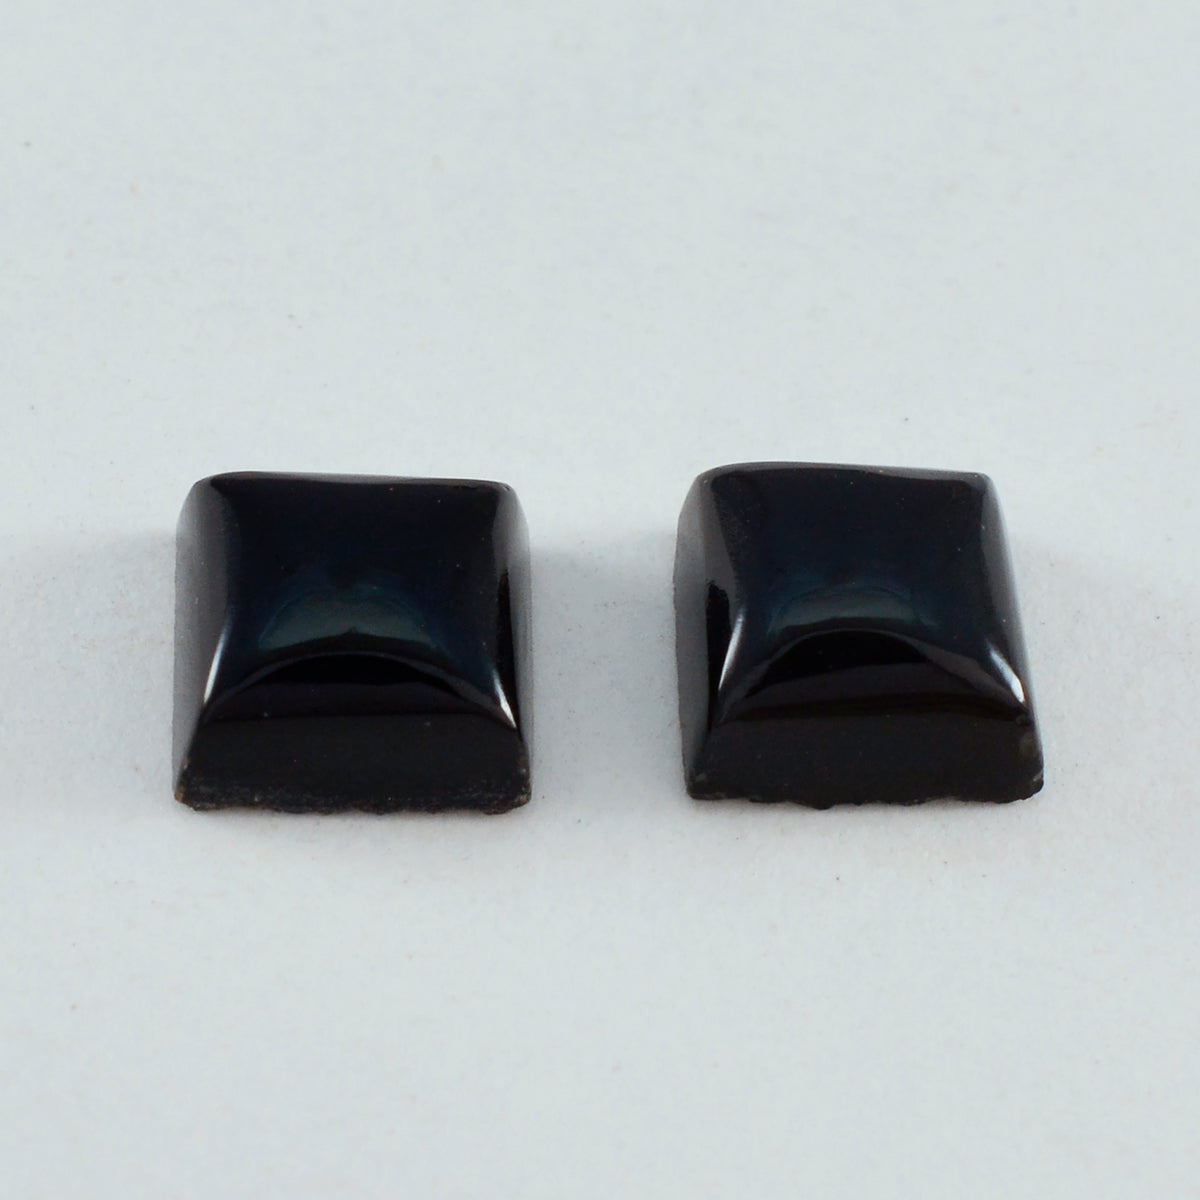 Riyogems 1PC Black Onyx Cabochon 13x13 mm Square Shape superb Quality Stone